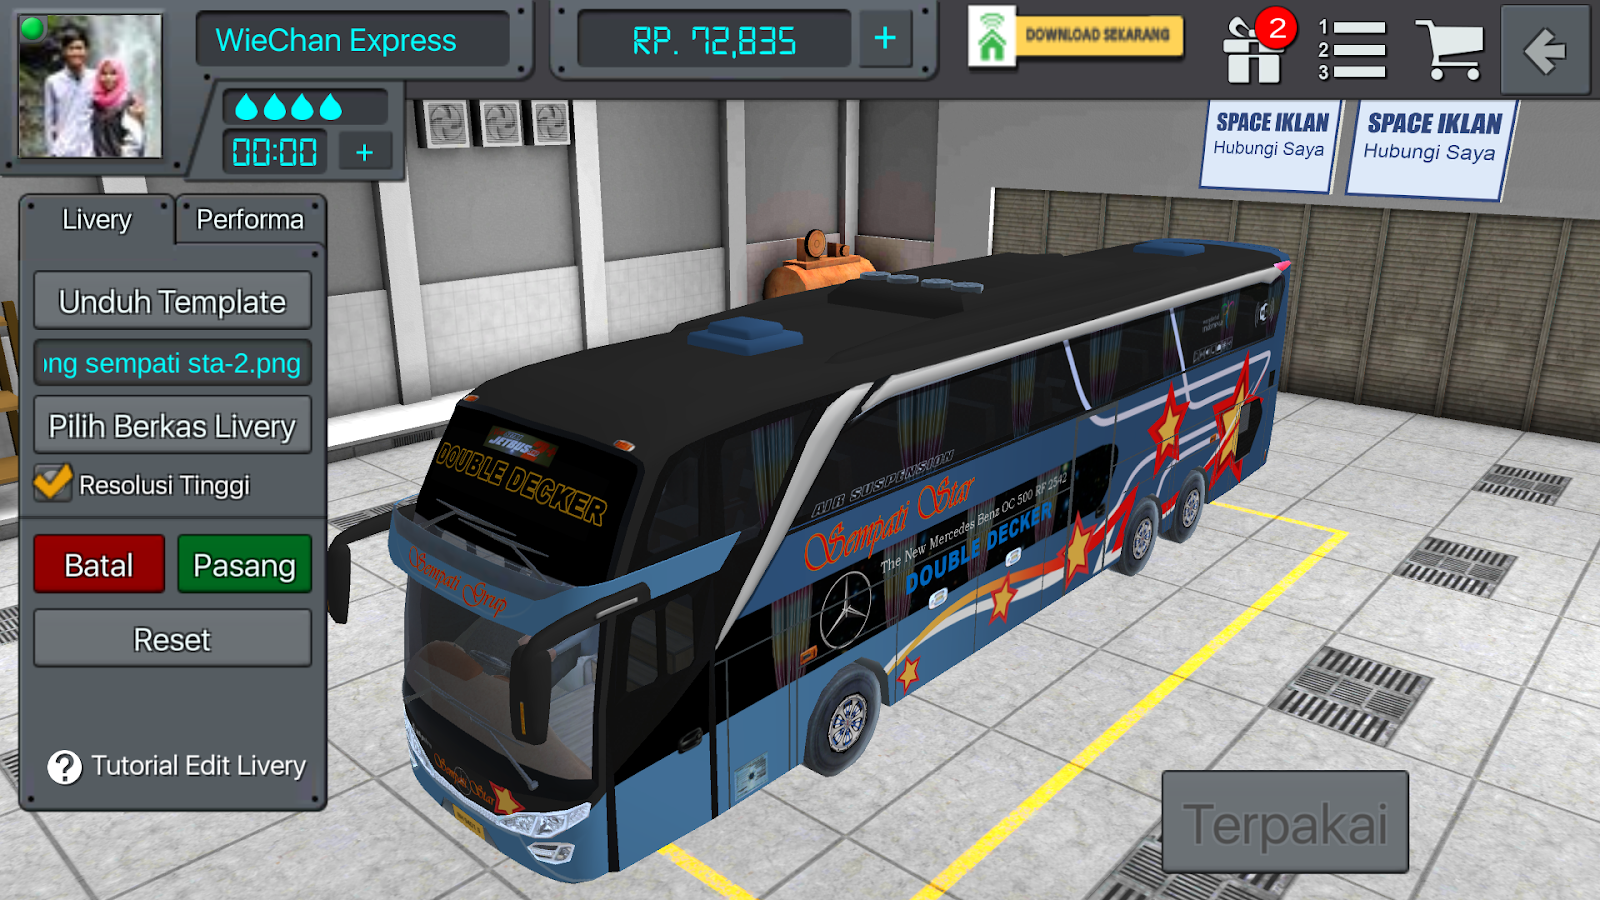 Фирма автобус 1. Автобус автобус АМОГУС. Название компании автобусов. Абобус АМОГУС. Bus Simulator с легковыми машинами.